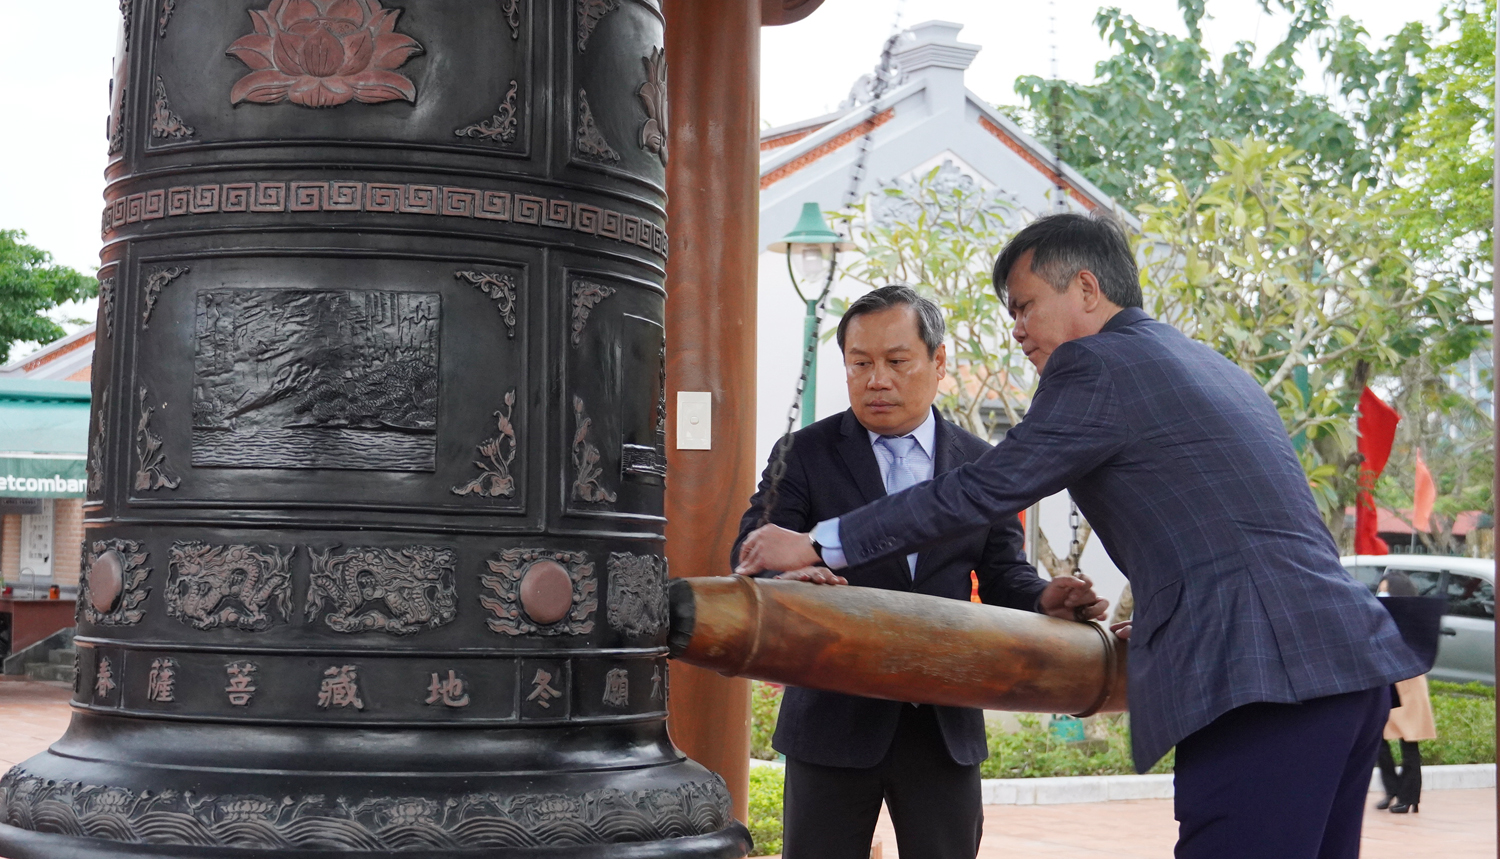 Đồng chí Bí thư Tỉnh ủy Vũ Đại Thắng và đồng chí Chủ tịch UBND tỉnh Trần Thắng thực hiện nghi thức thỉnh chuông.